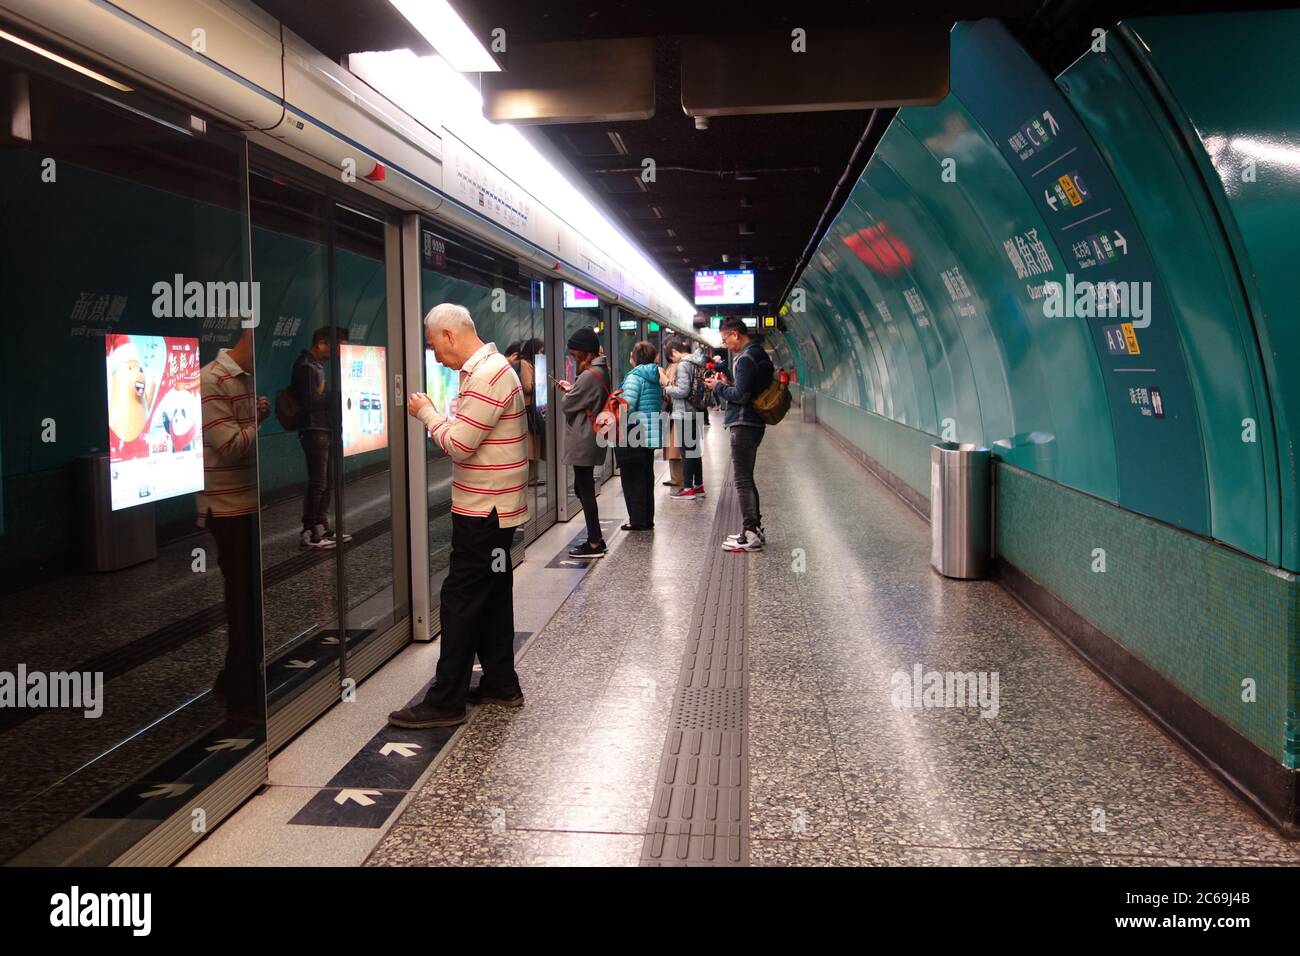 Les gens attendent derrière les portes coulissantes automatiques de la station de métro de Hong Kong. Banque D'Images